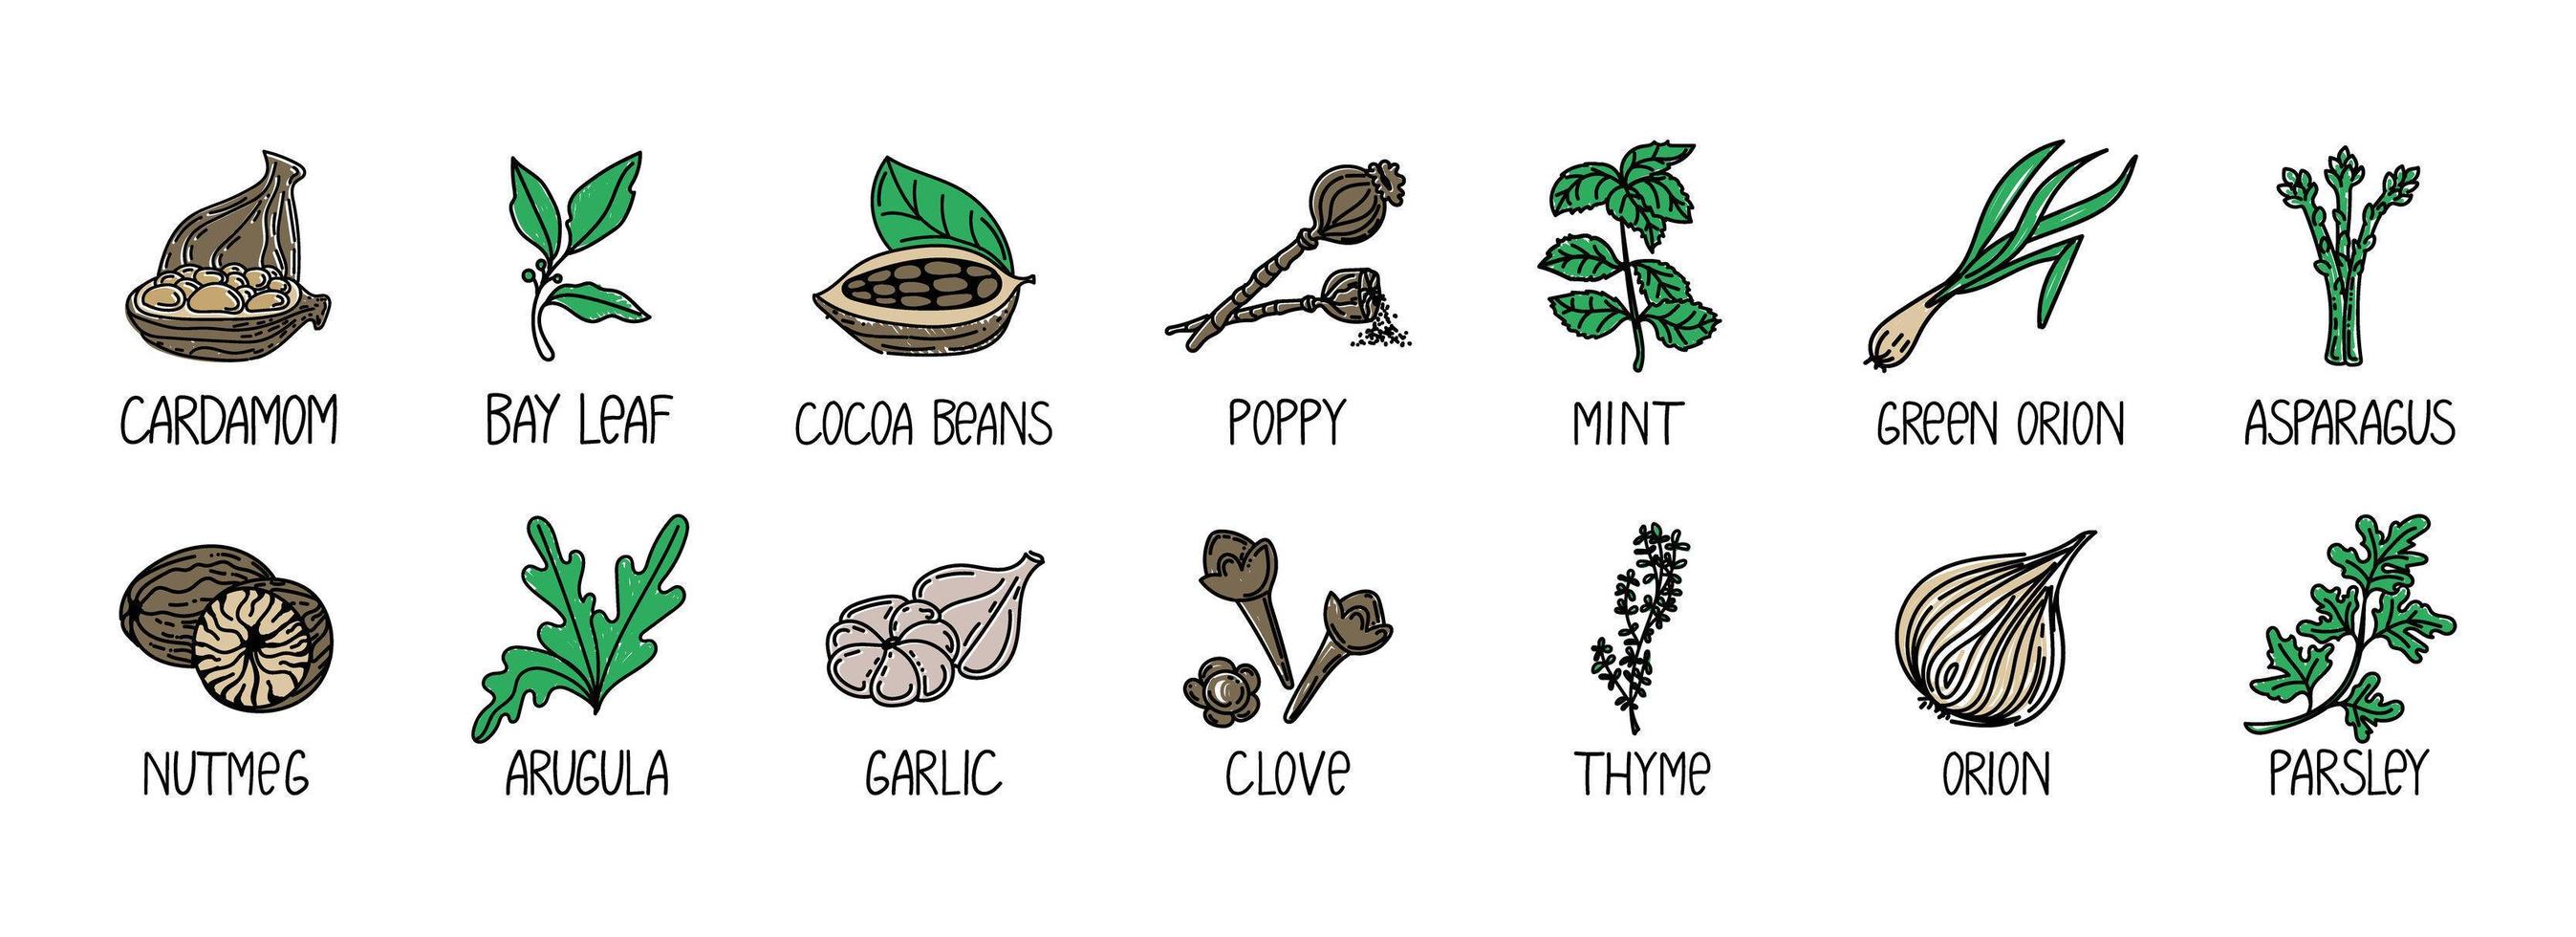 set di erbe e spezie, elemento disegnato in stile doodle. un modello di packaging con logo ed emblema - erbe e spezie - cardamomo, alloro, fave di cacao, noci, cipolle, ecc. vettore